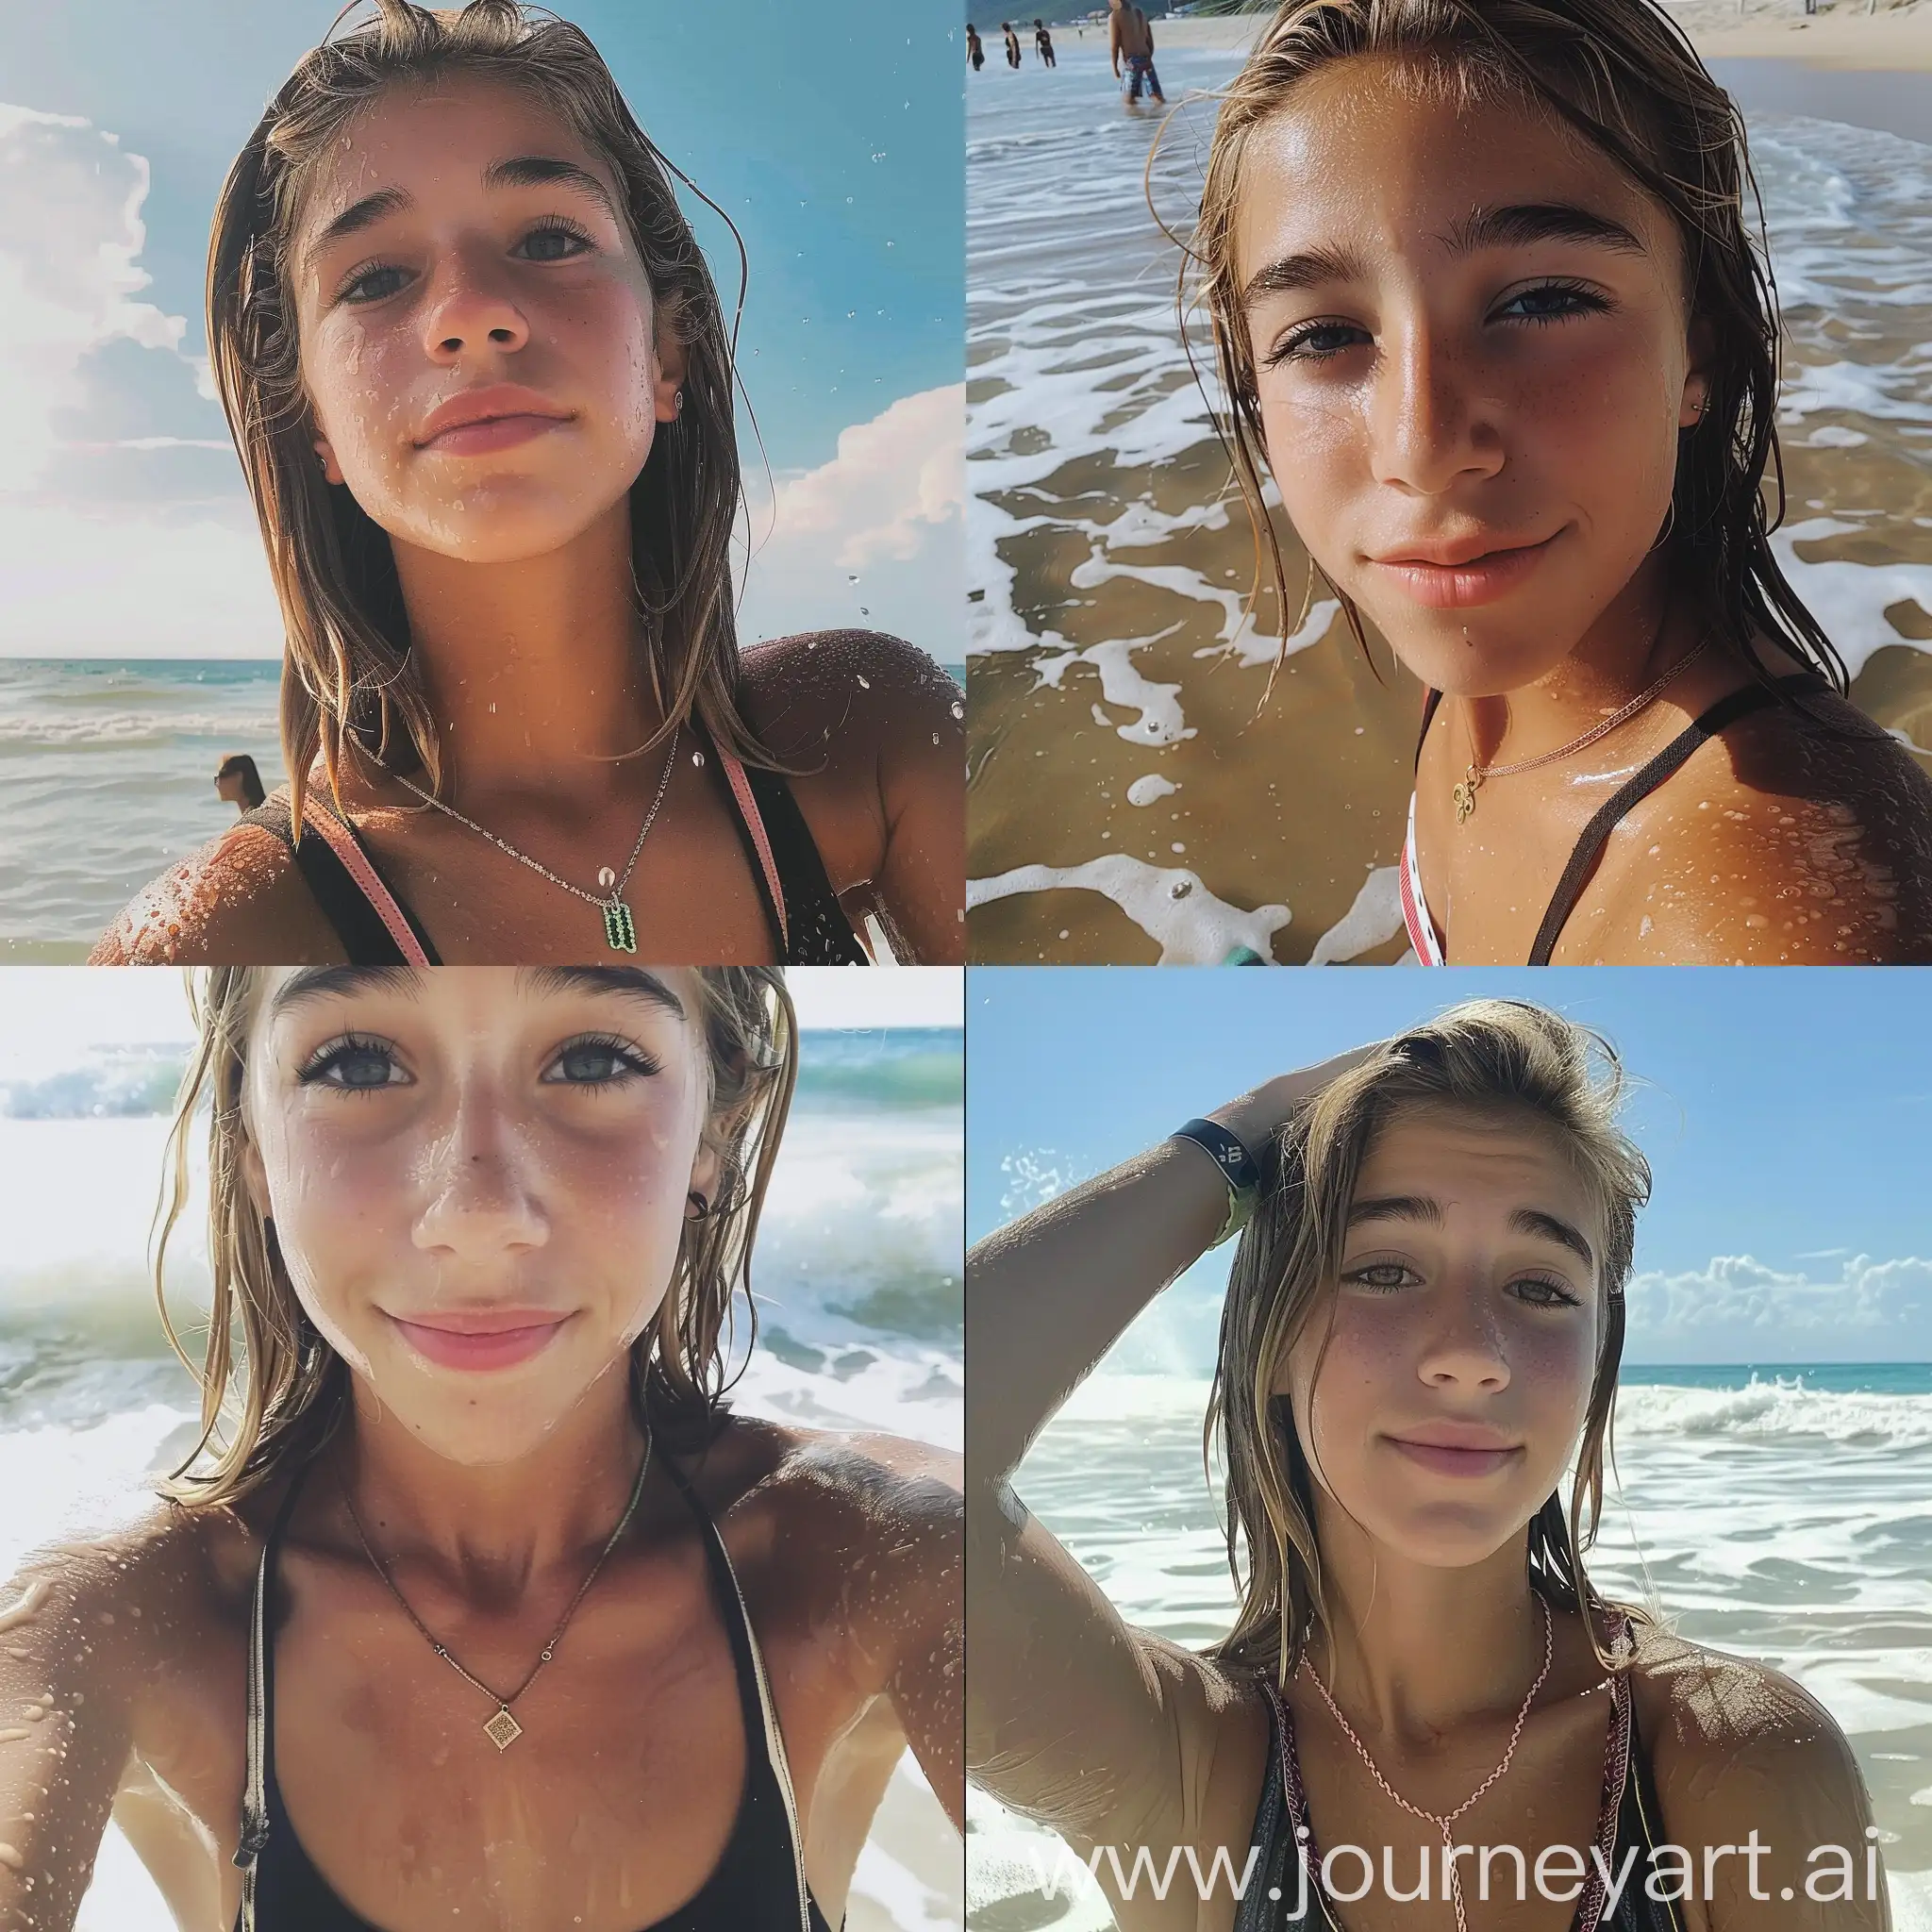 VSCO-Girls-Beach-Day-Selfie-with-Wet-Hair